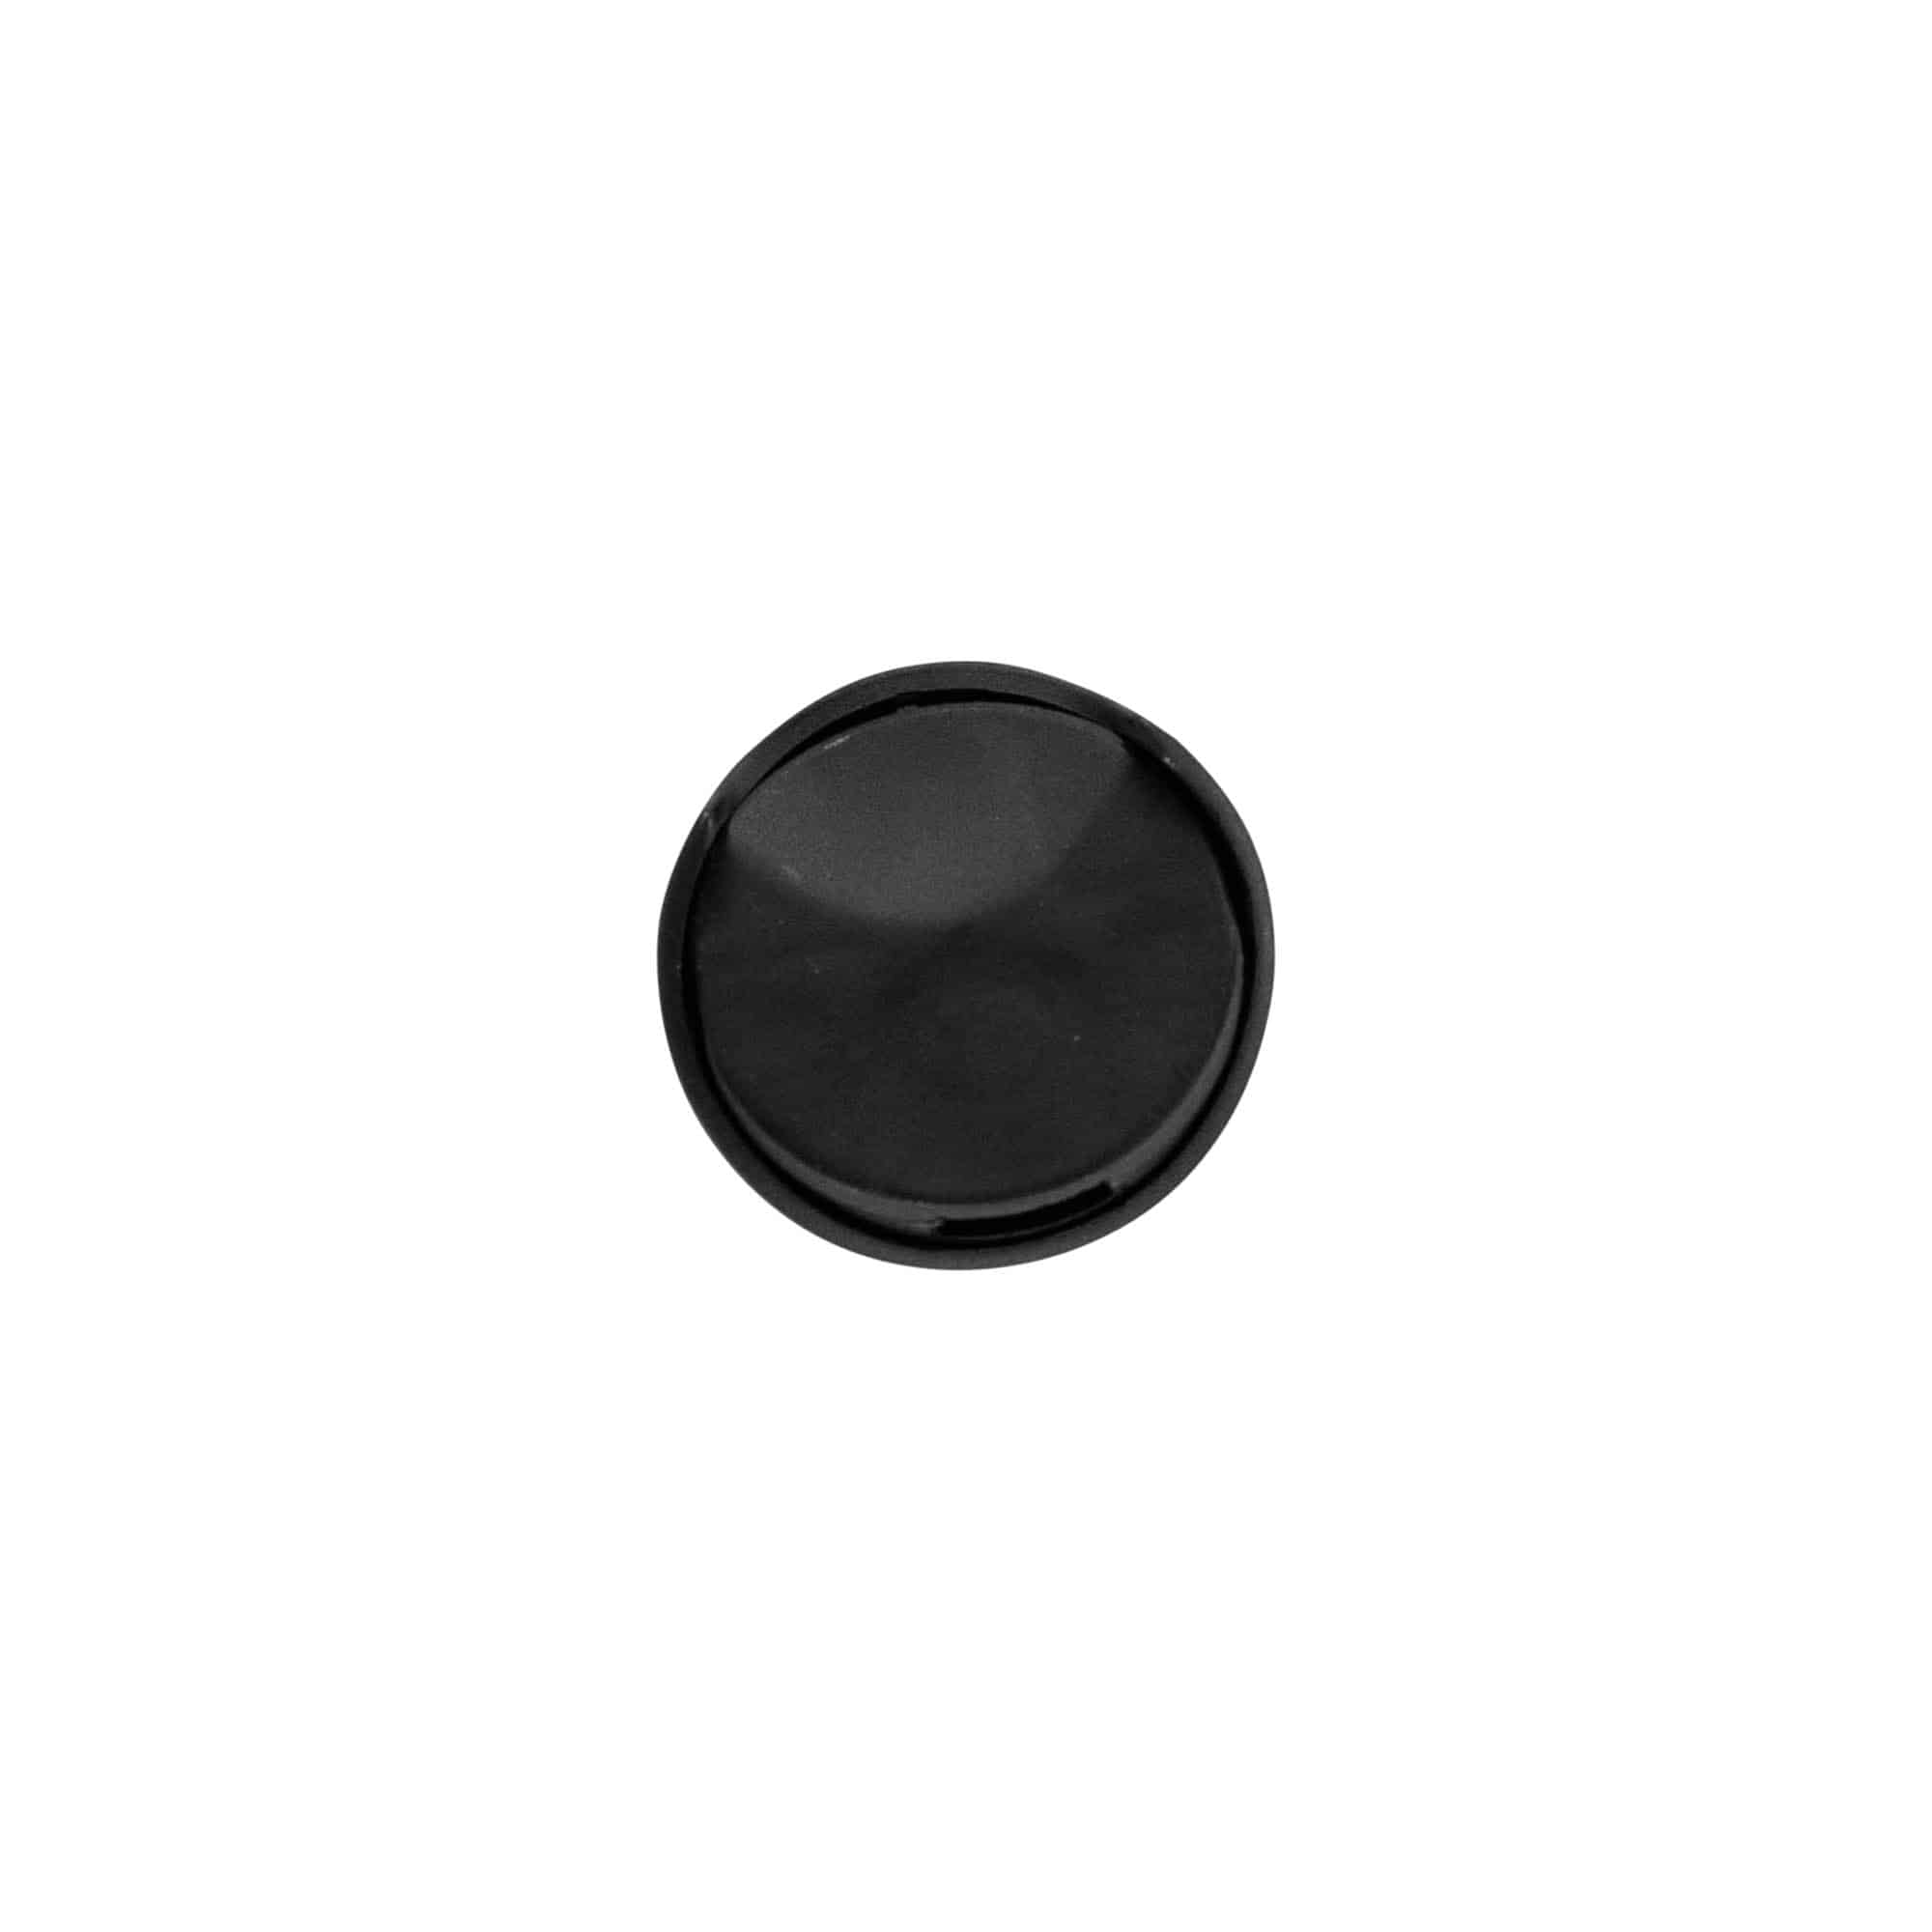 Zakrętka Disc Top, tworzywo sztuczne PP, kolor czarny, do zamknięcia: GPI 24/410